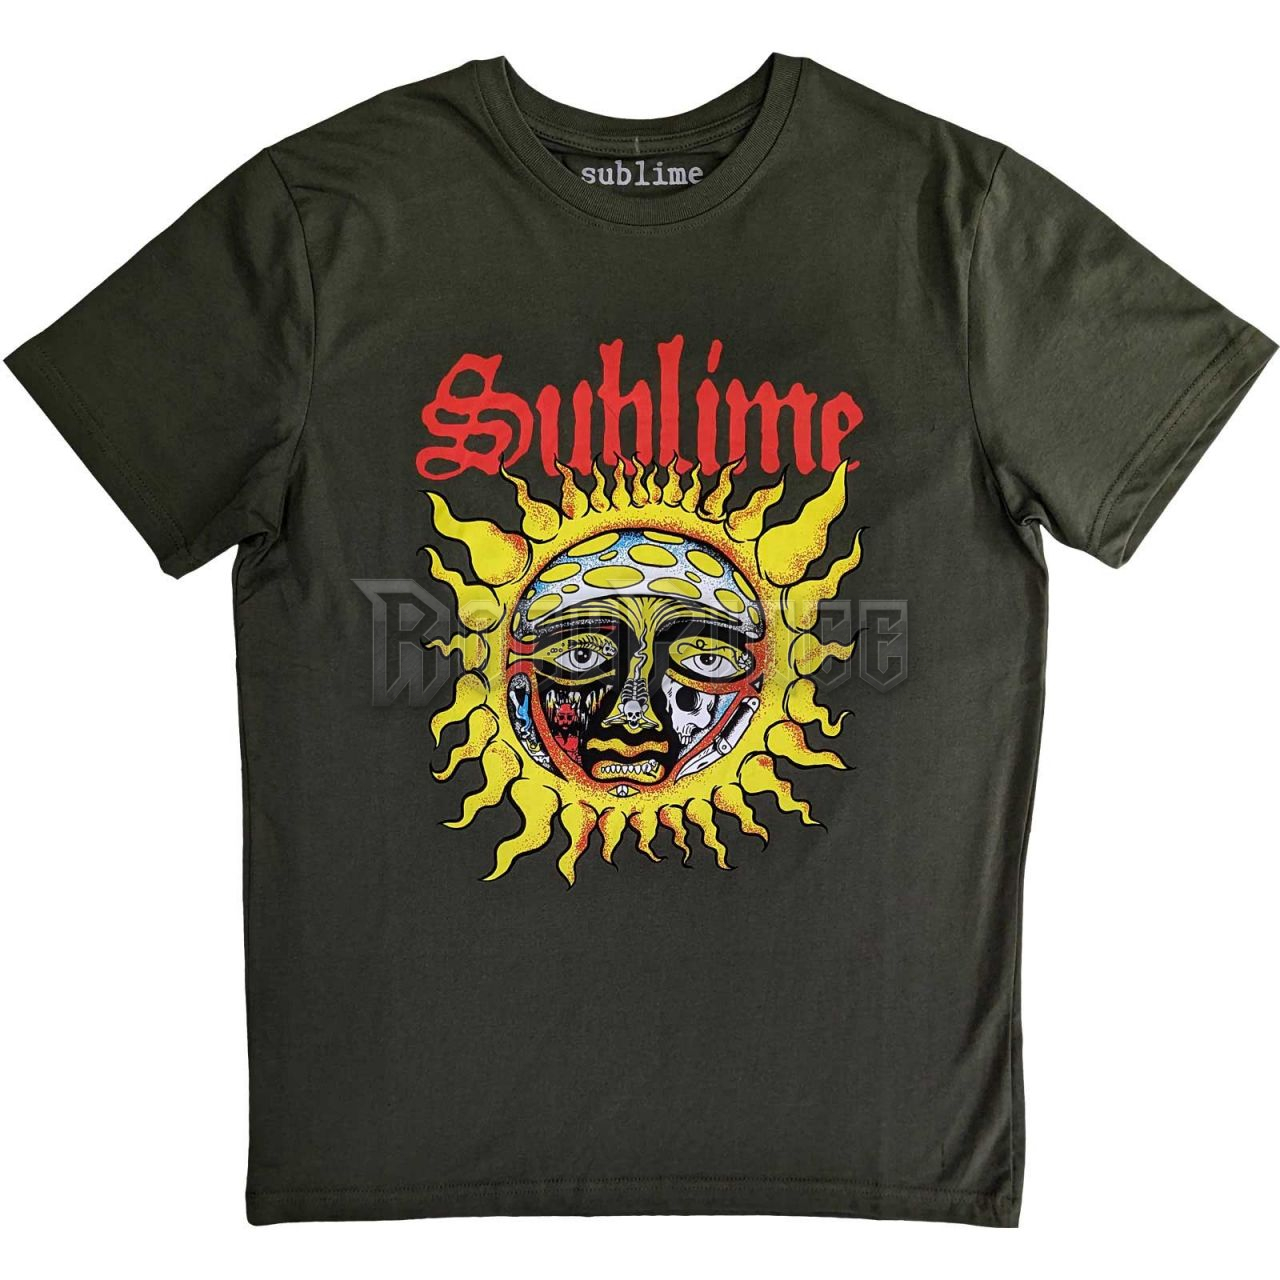 Sublime - Yellow Sun - unisex póló - SUBTS05MGR